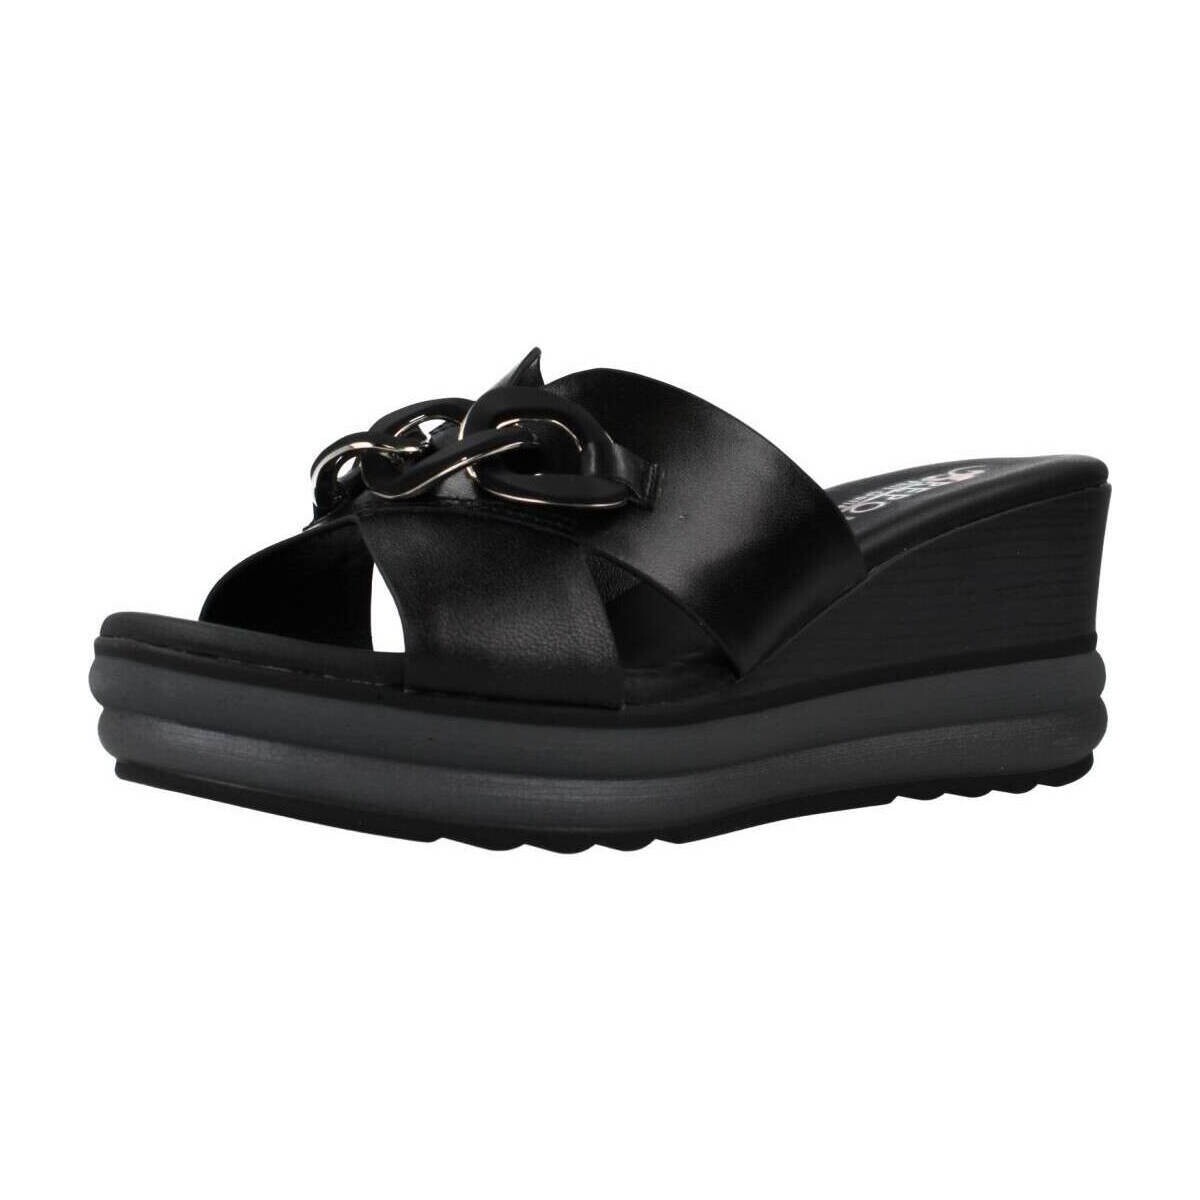 kengät Naiset Sandaalit ja avokkaat Repo 20101R Musta